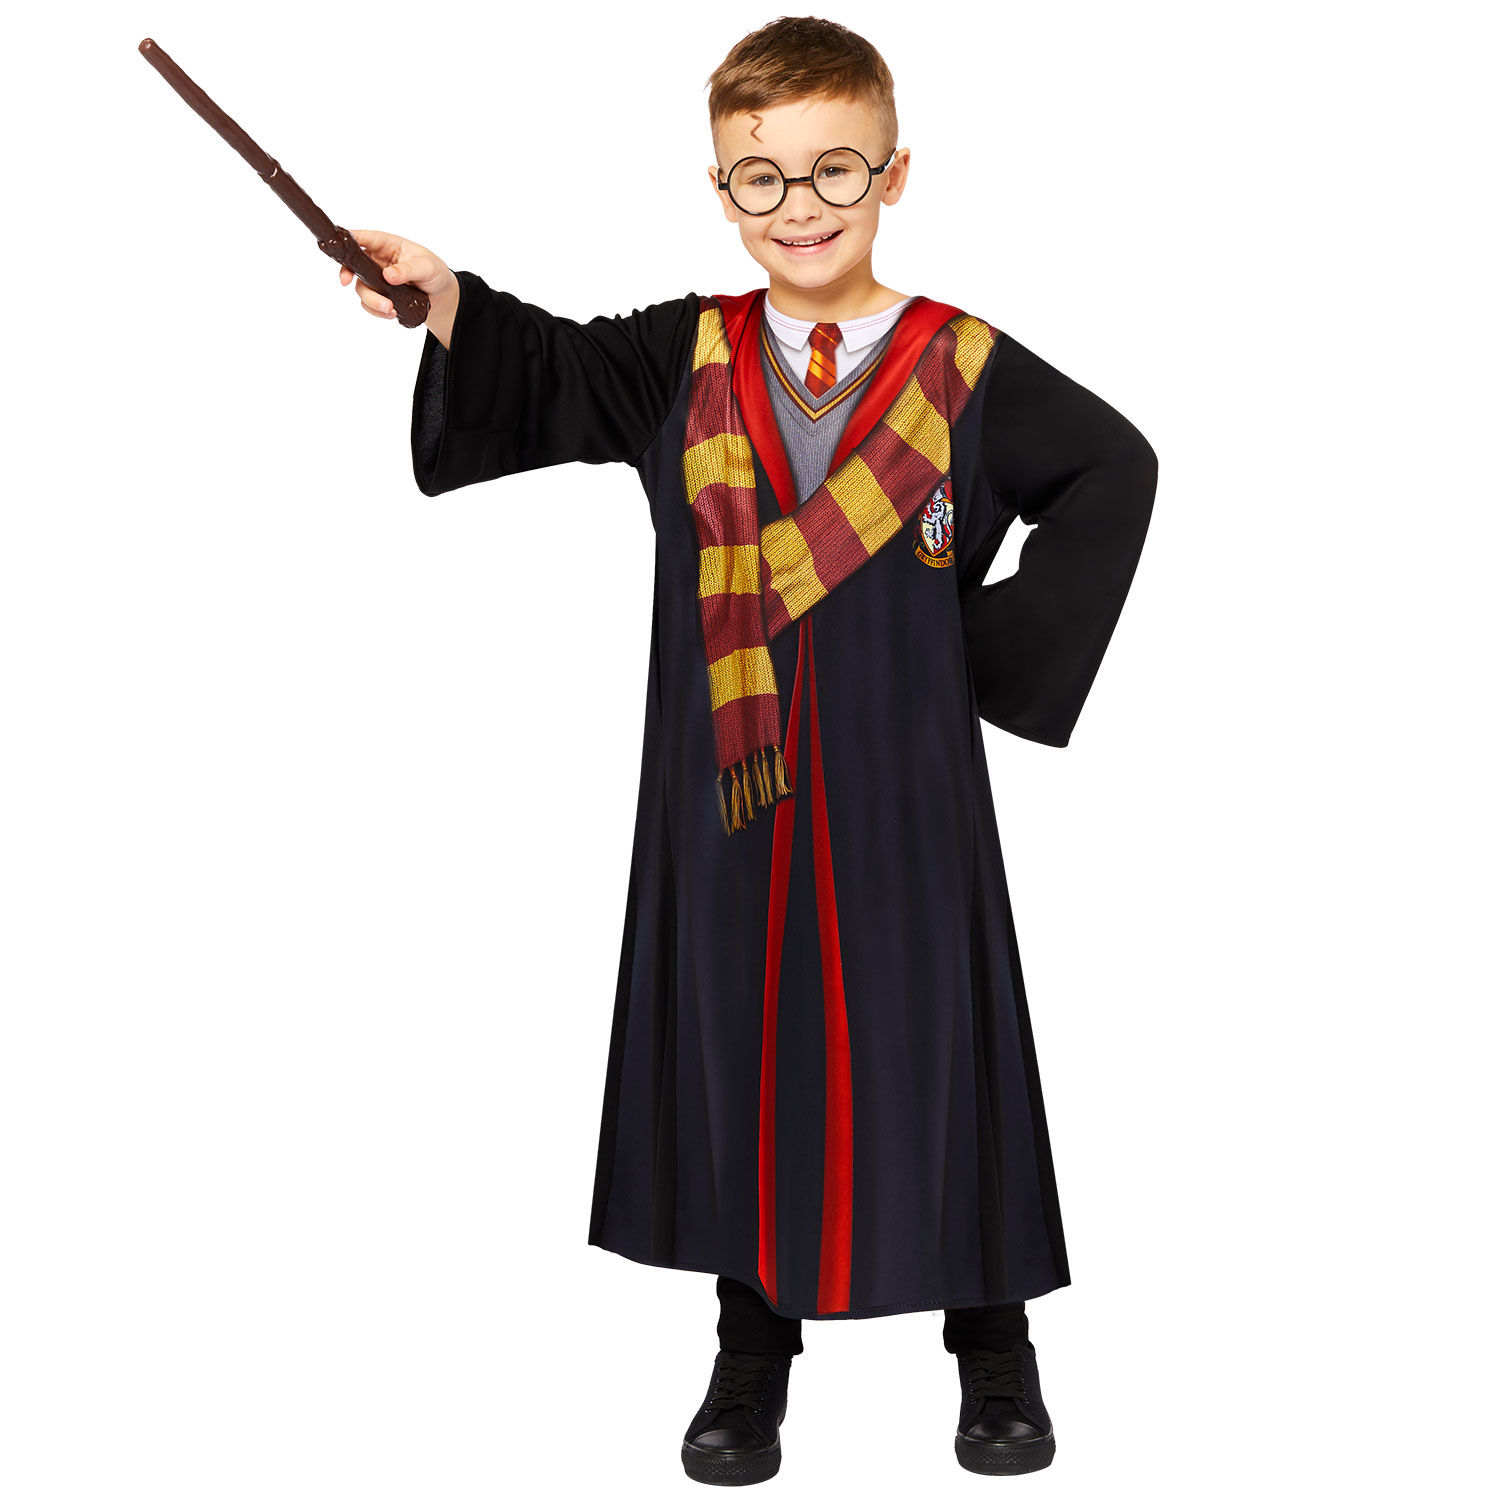 Kids Harry Potter Deluxe Costume Kit